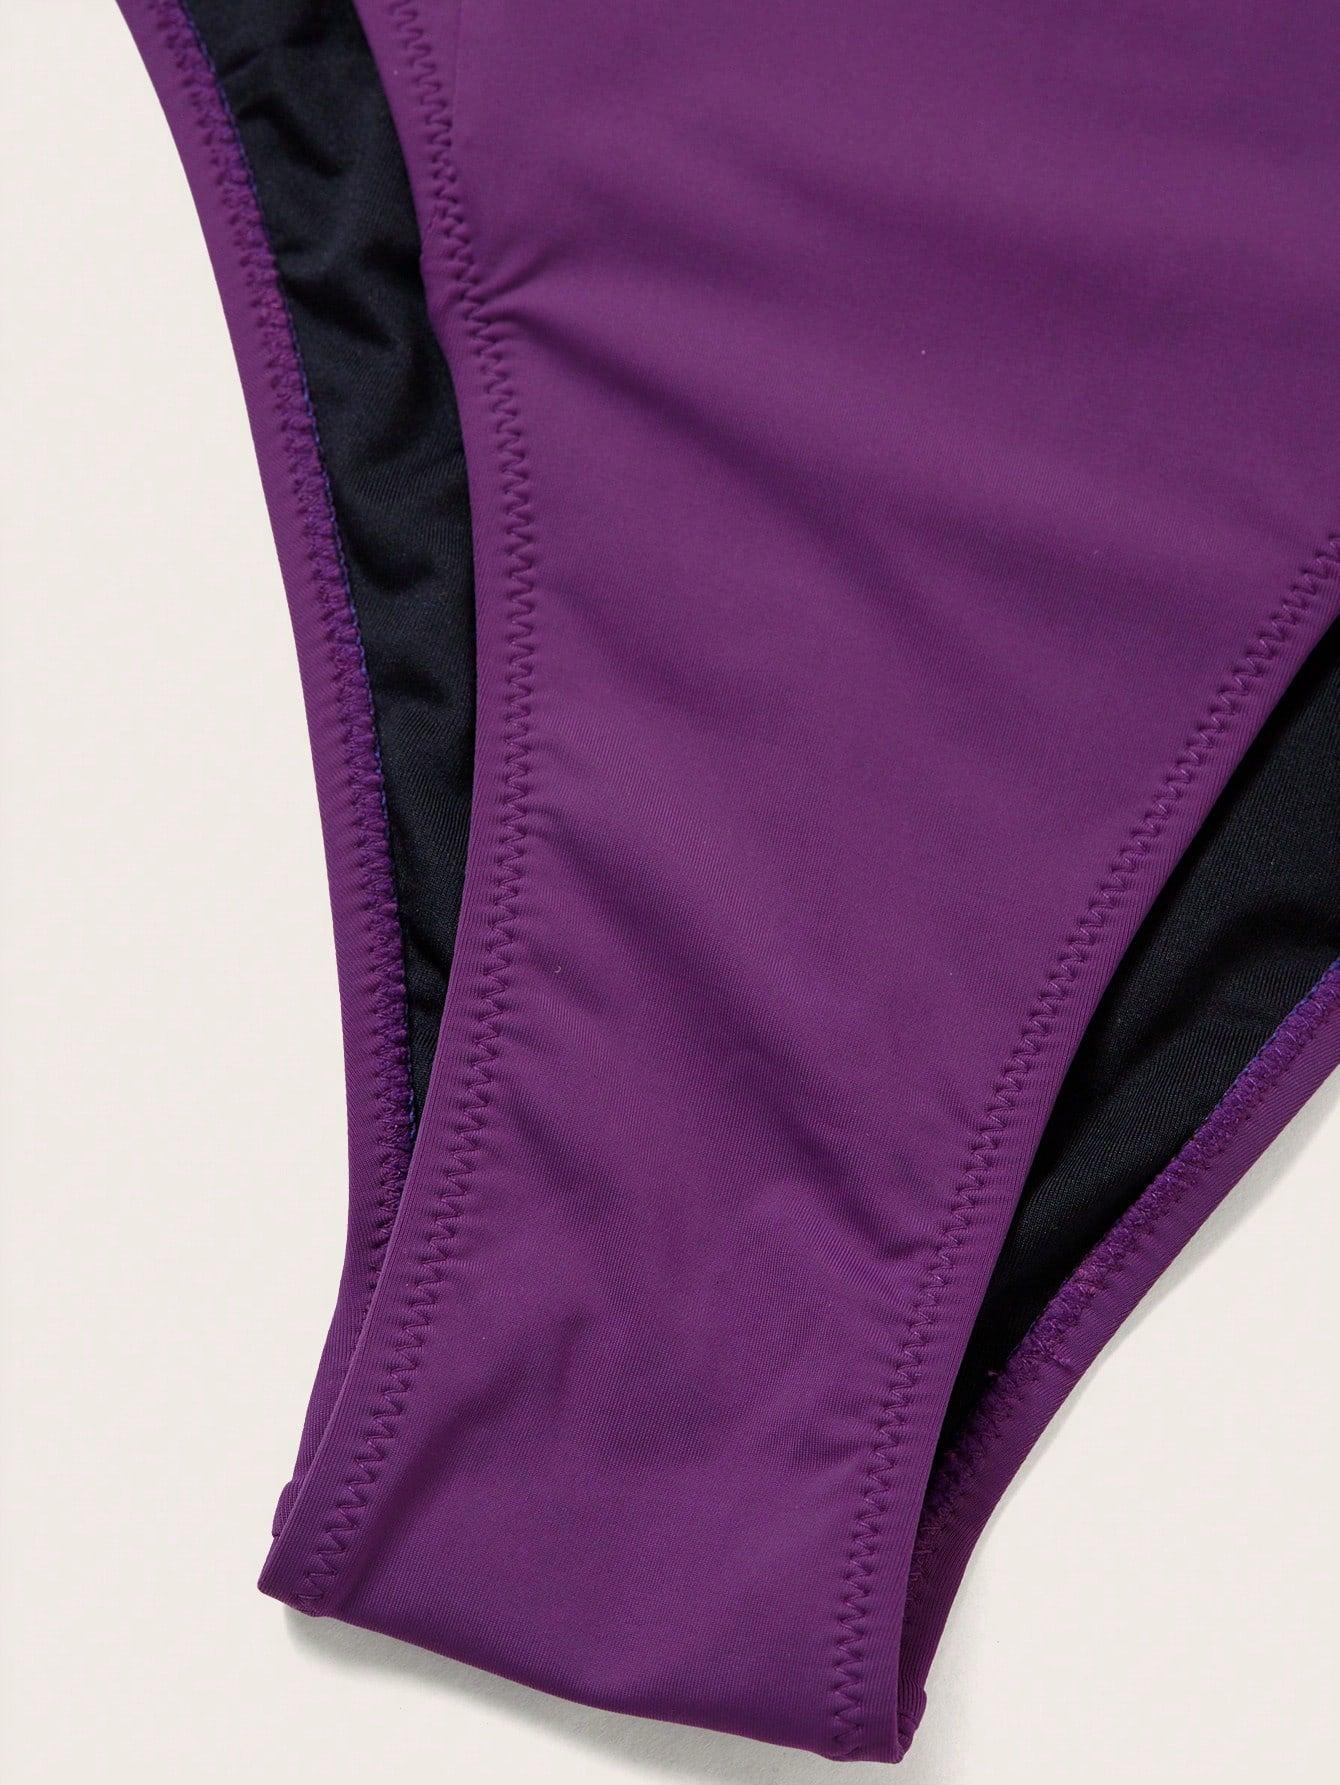 fioletowy kostium kąpielowy jednoczęściowy fiszbiny